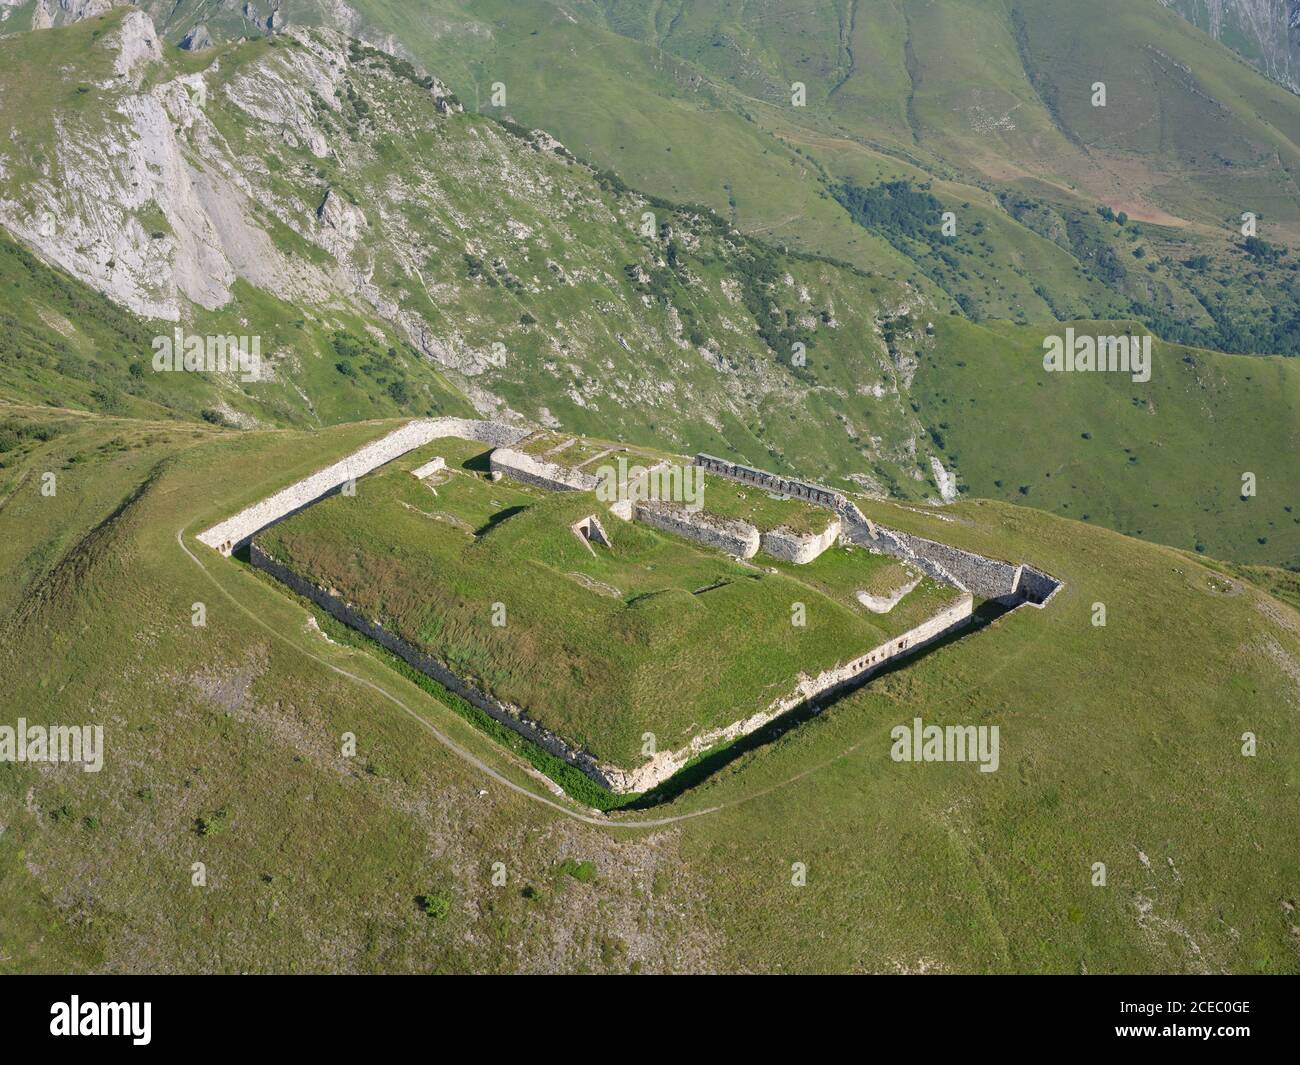 LUFTAUFNAHME. Fort Pernante, eine alte militärische Festung oberhalb des Col de Tende. Tende, Alpes-Maritimes, Frankreich. Stockfoto